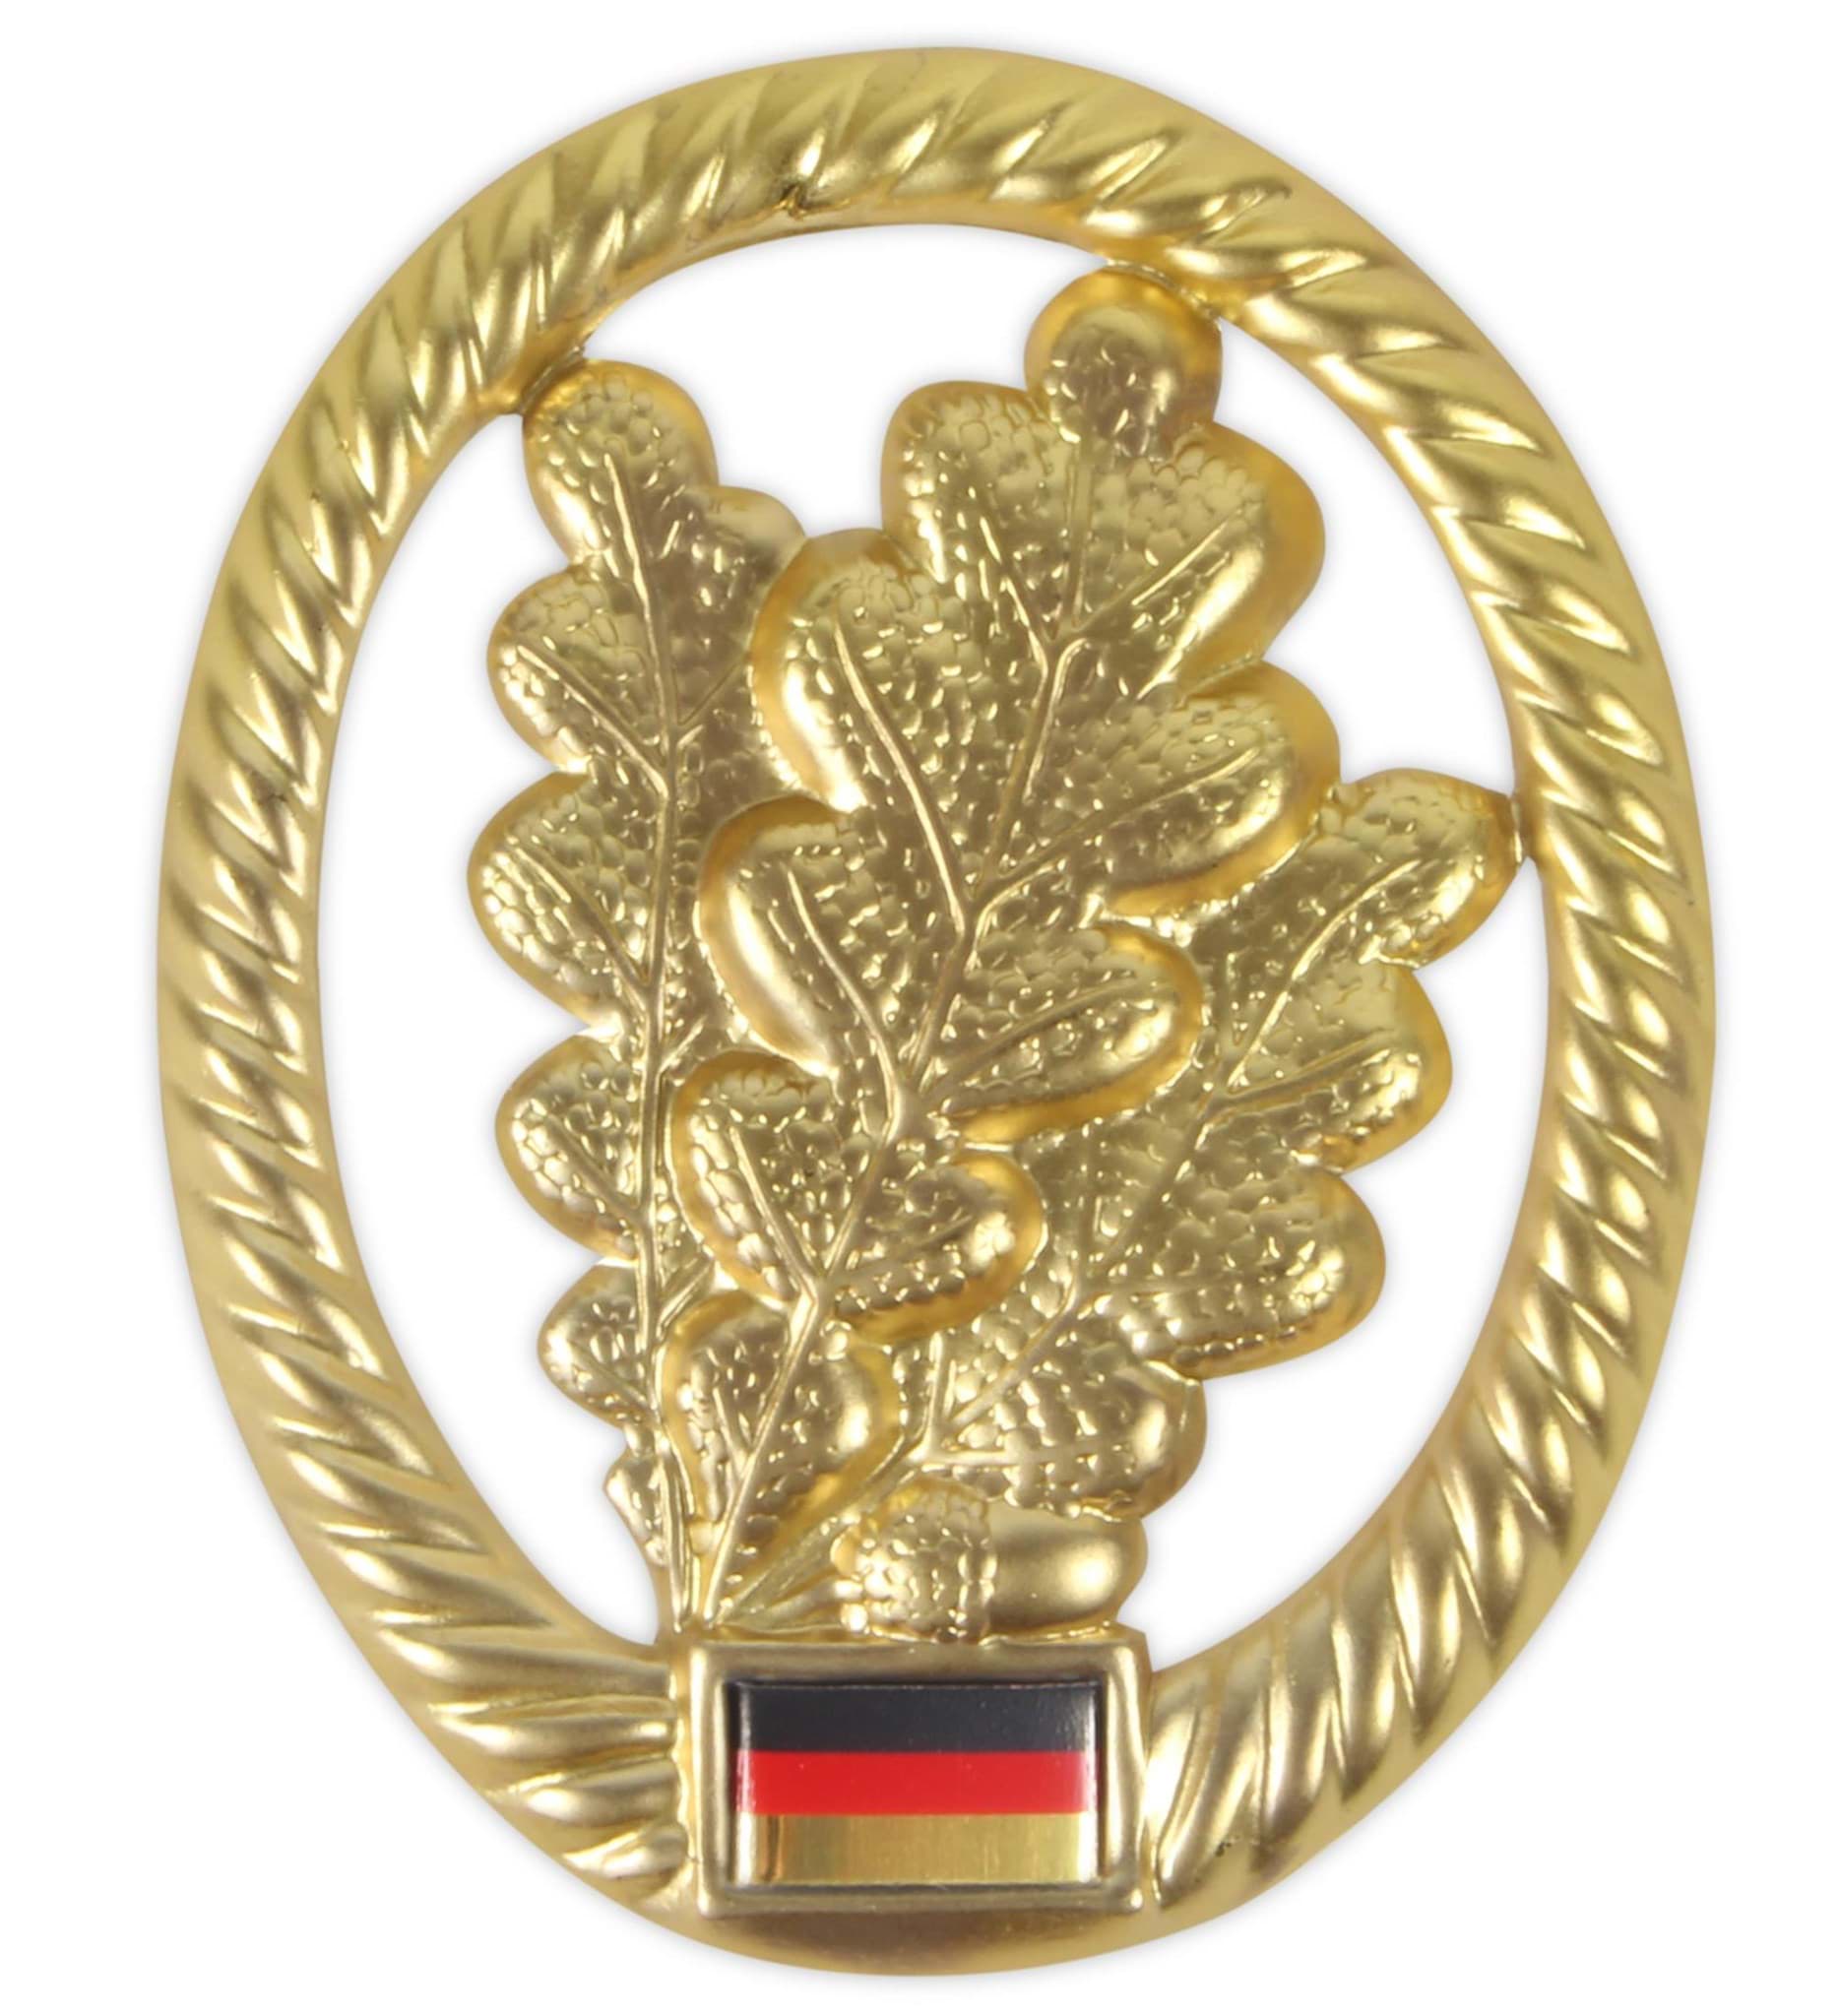 Bild von Bundeswehr Barettabzeichen Jäger